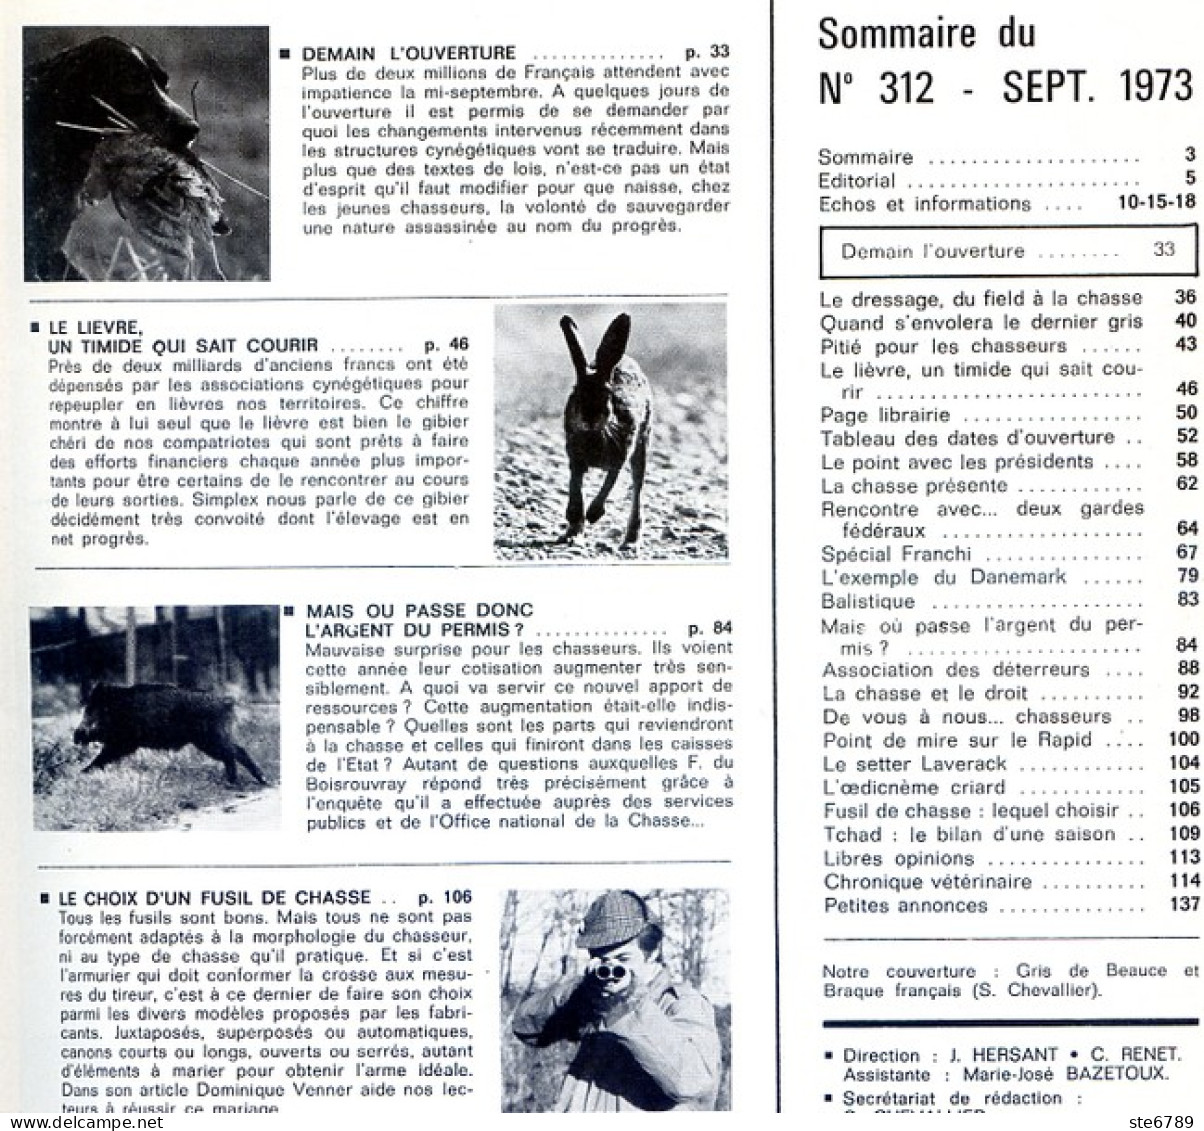 La Revue Nationale De LA CHASSE N° 312 Septembre 1973 Le Lievre , Choix Fusil De Chasse - Hunting & Fishing